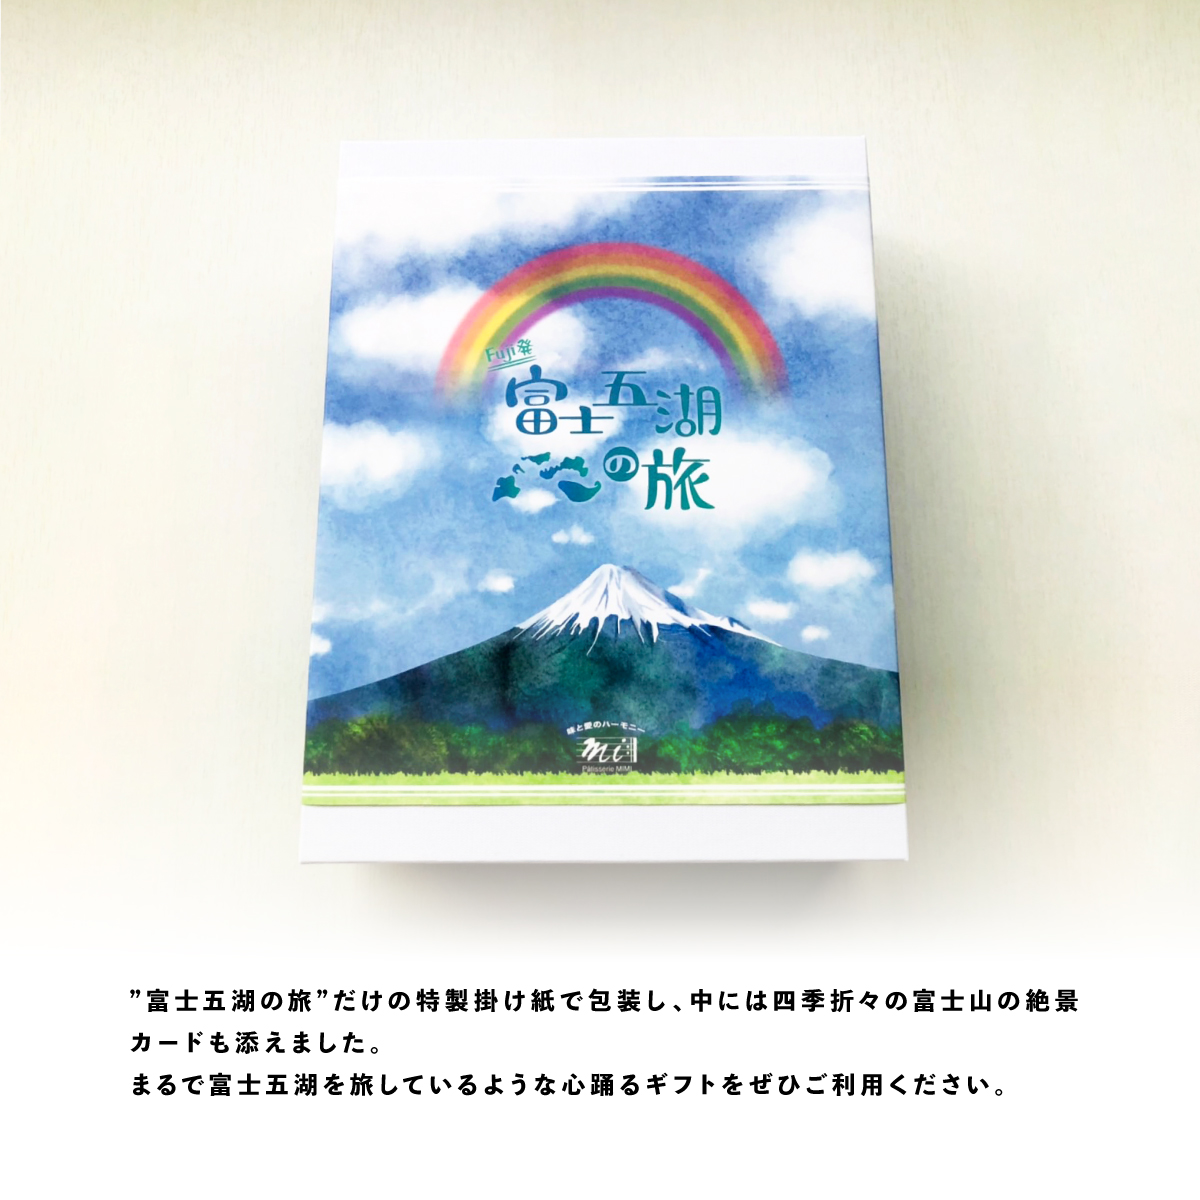 富士五湖の旅は、このギフトセットだけの富士山デザインの特別な掛け紙であしらいました